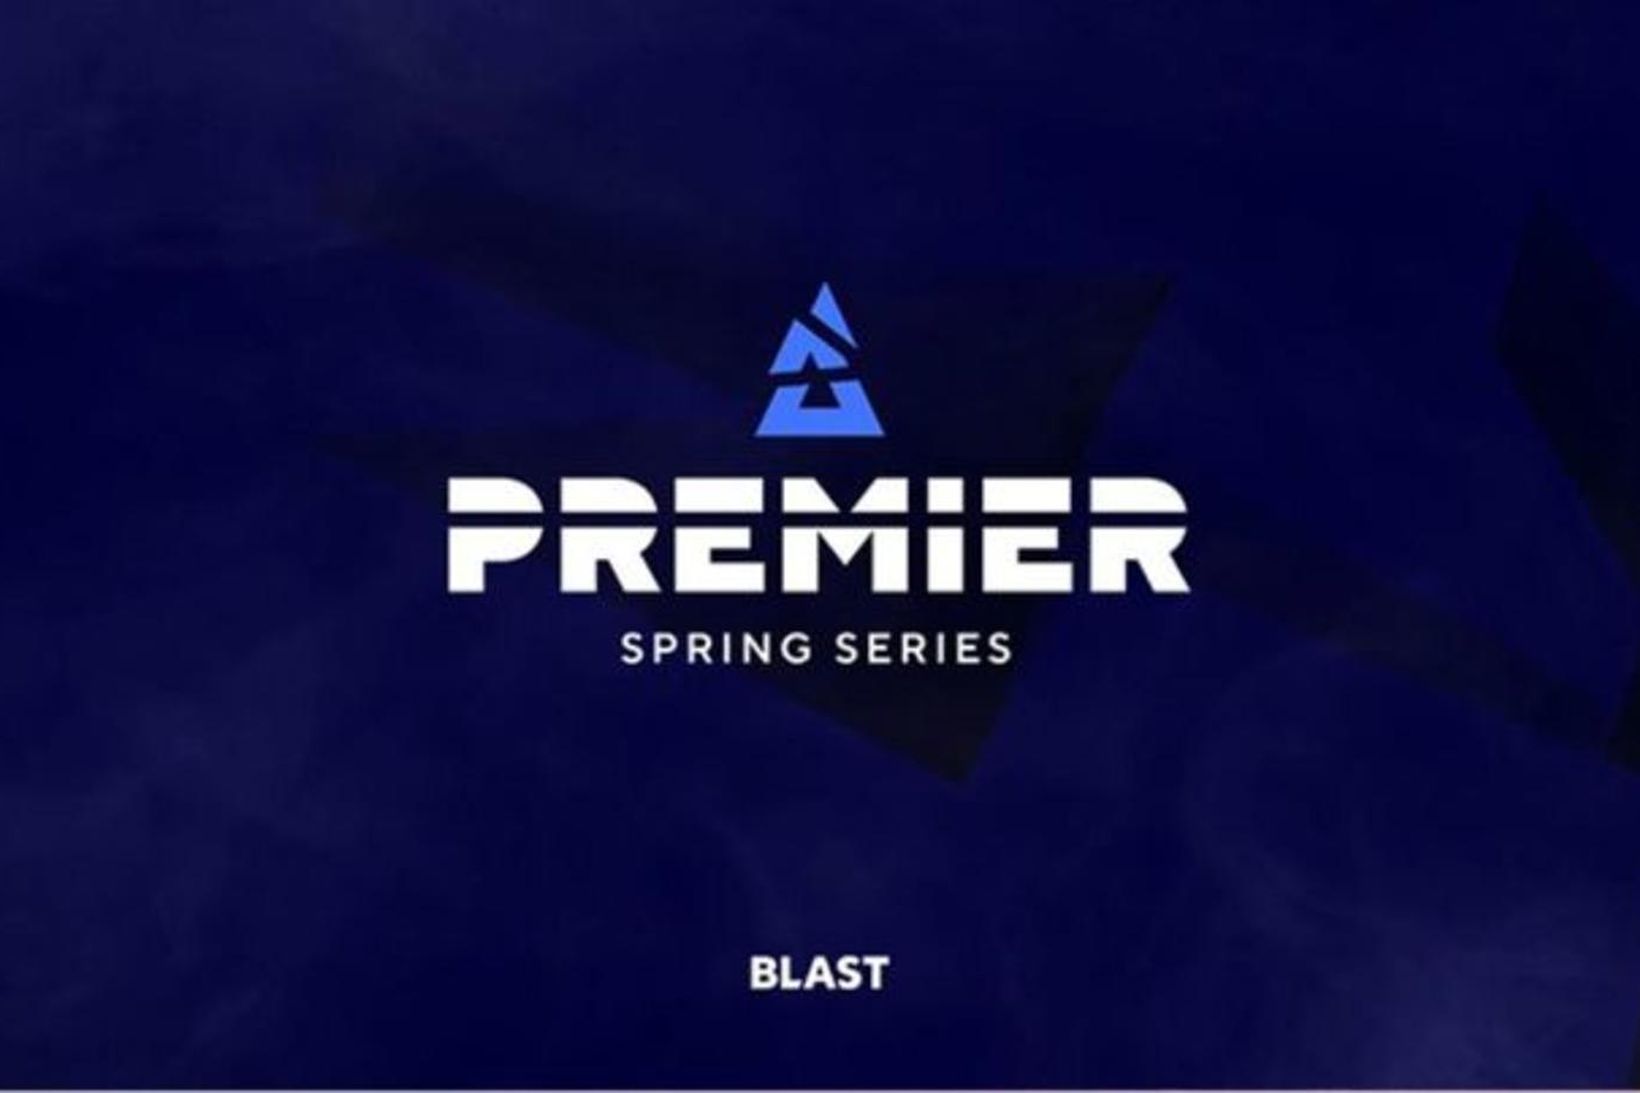 Blast Premier mótaröðin í Counter-Strike.